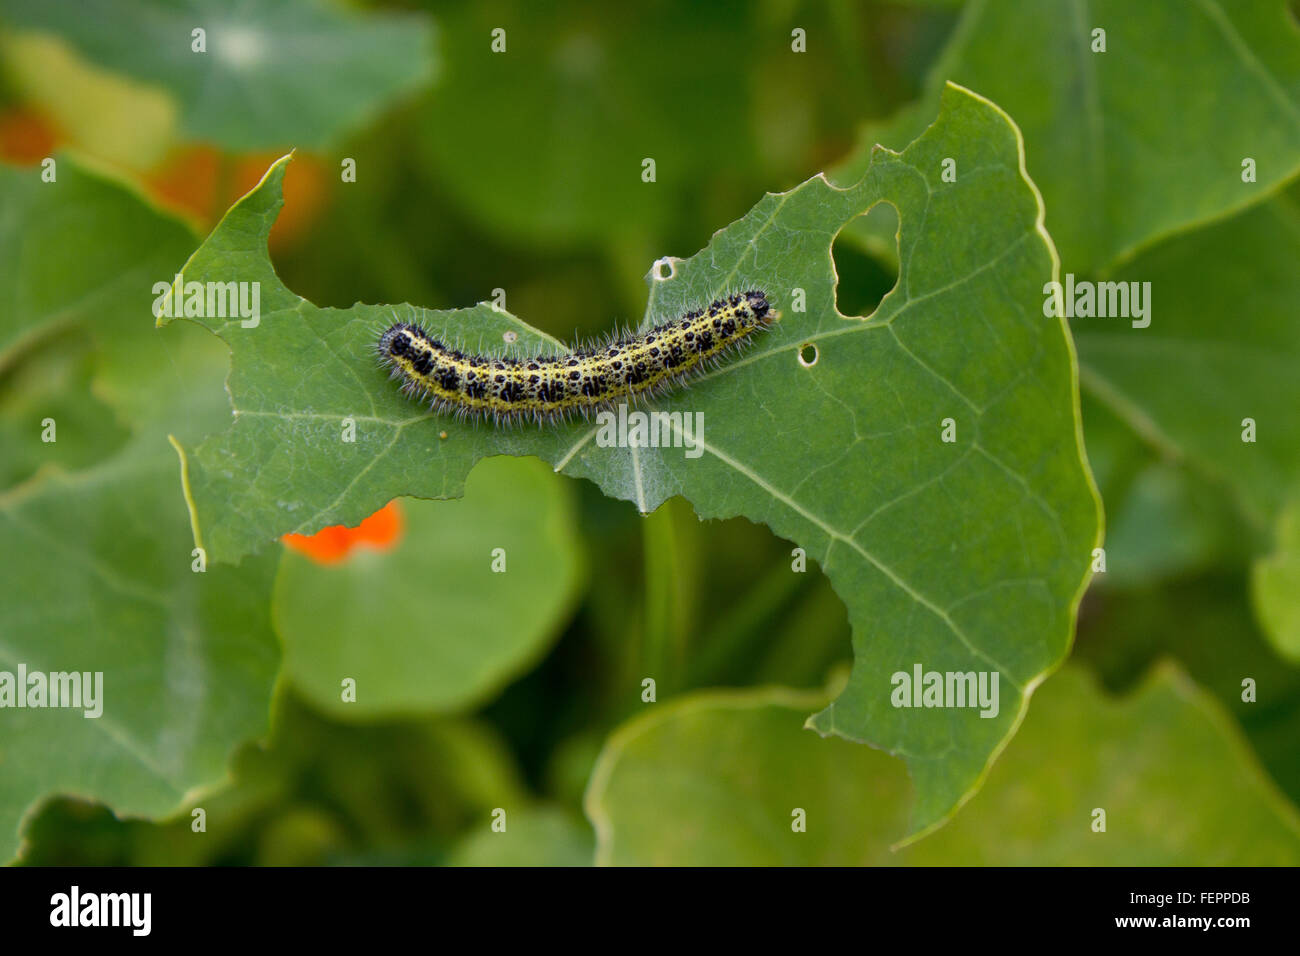 Caterpillar on eaten leaf Stock Photo